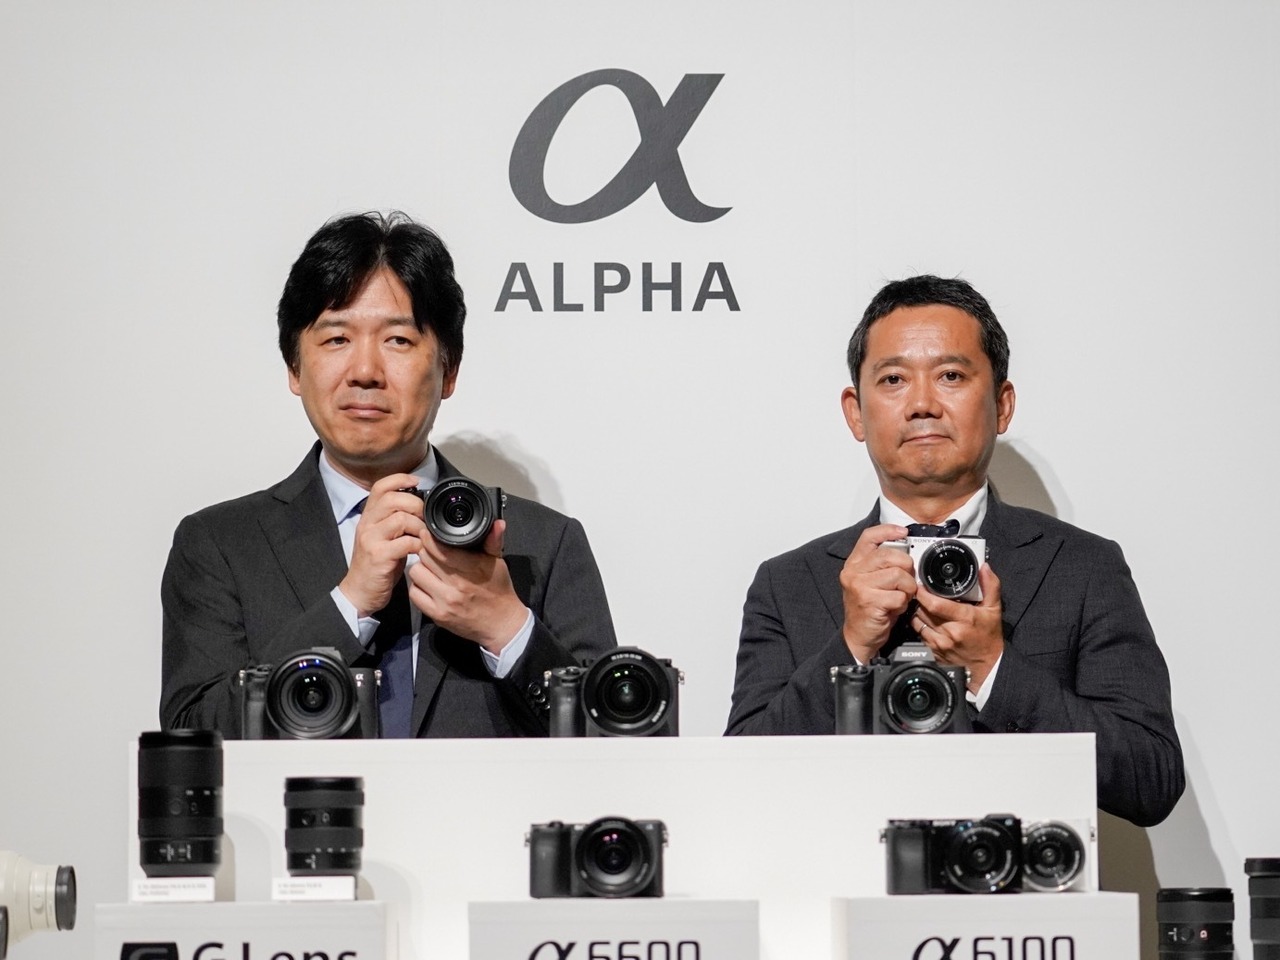 ソニー、APS-Cミラーレスの新フラッグシップ「α6600」を国内発表--手頃な「α6100」も - CNET Japan